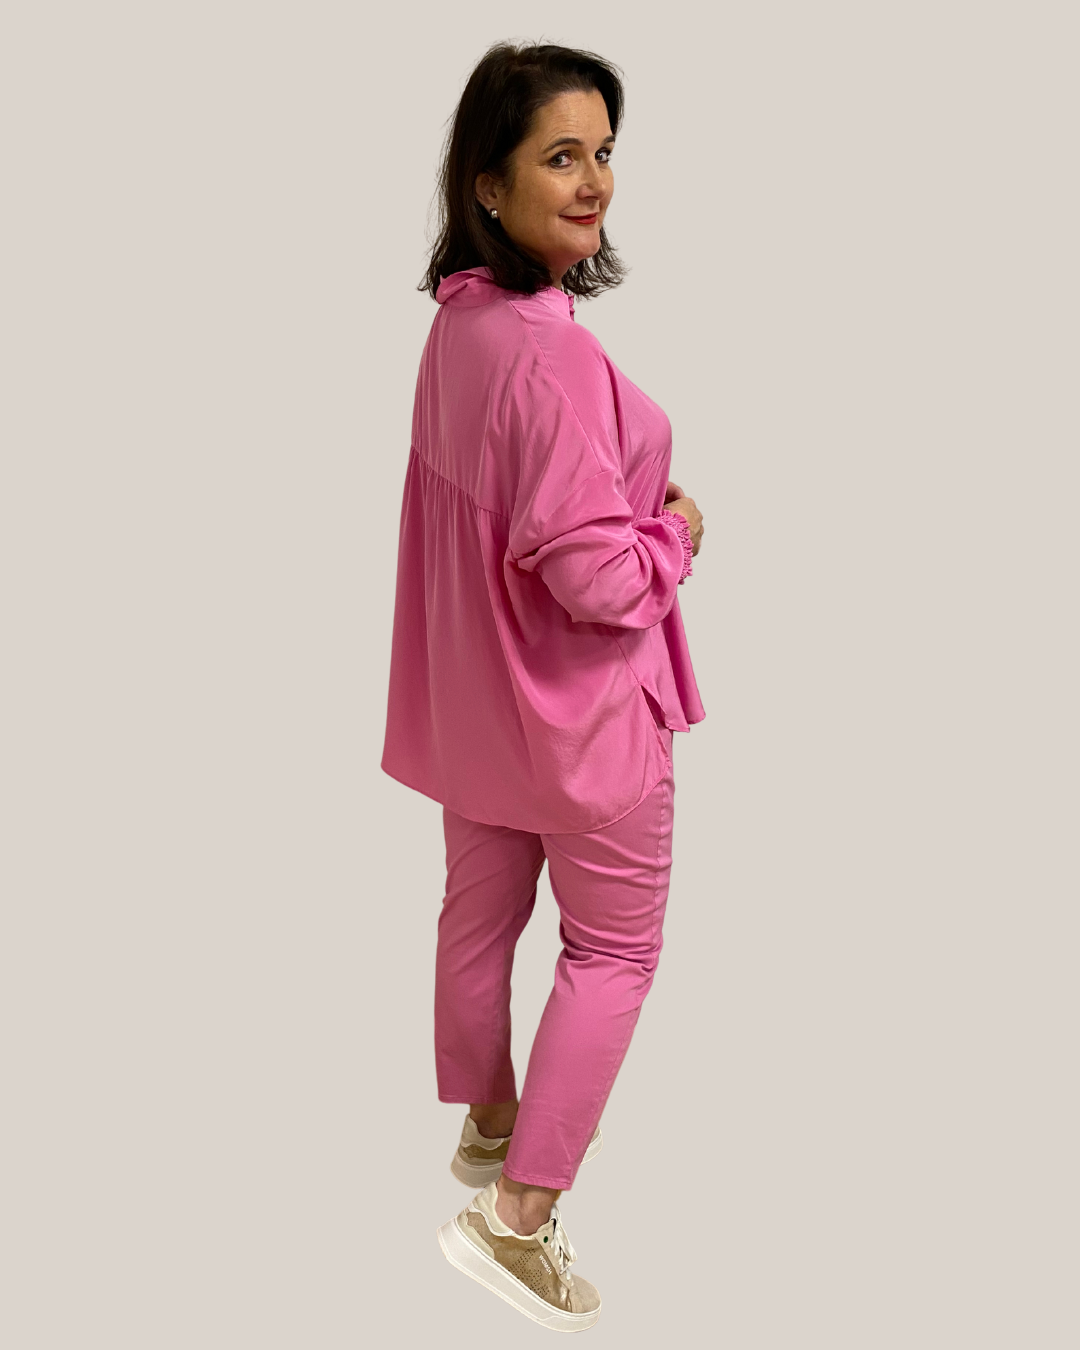 Bluse in Pink mit leichten Rüschen im Rücken